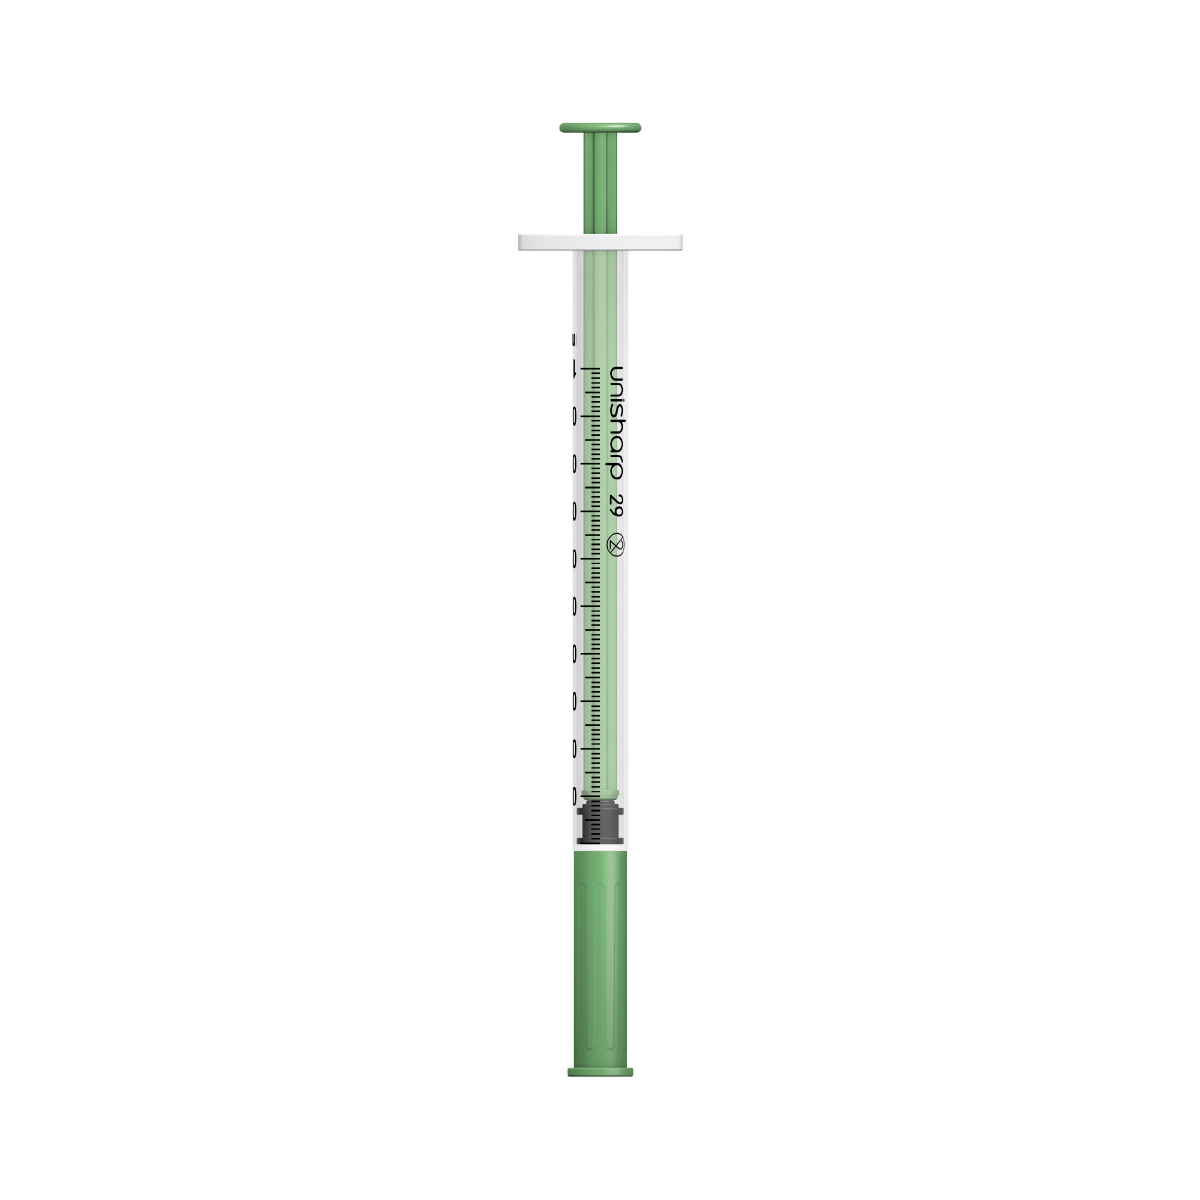 Unisharp 1ml 29G fixed needle syringe: green